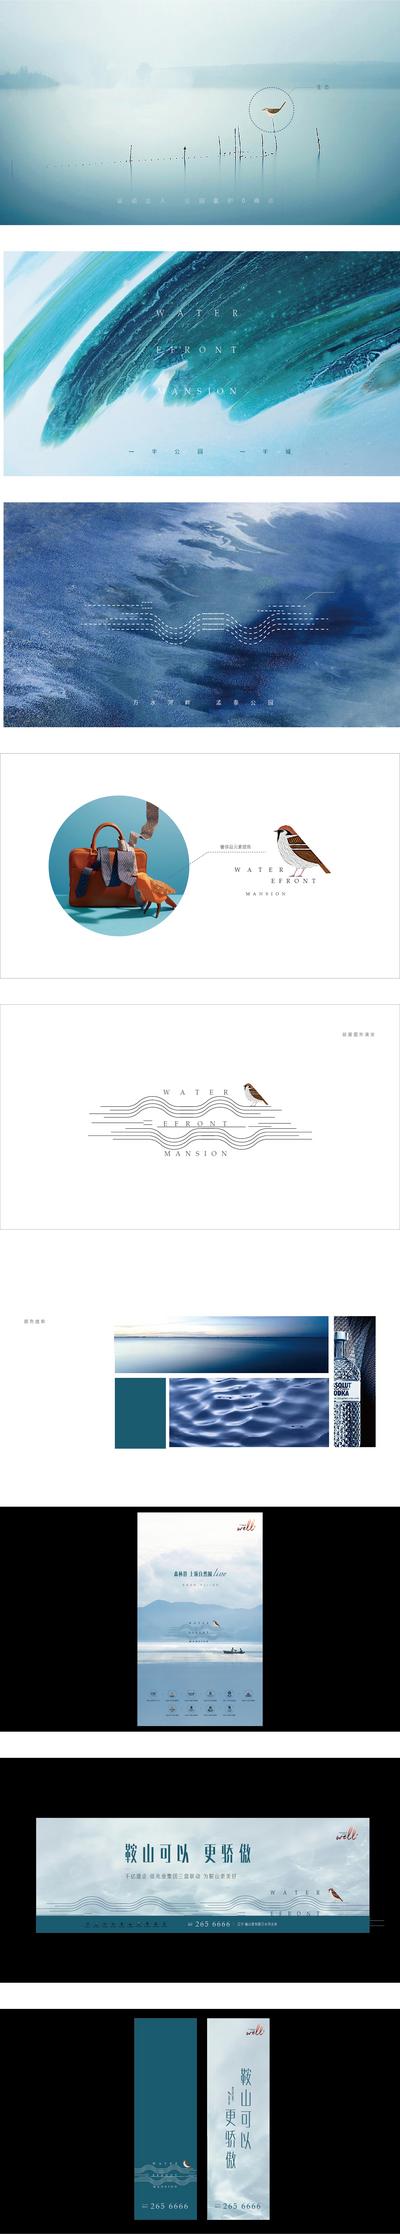 南门网 vi 房地产 提案 调性 主形象 logo设计 